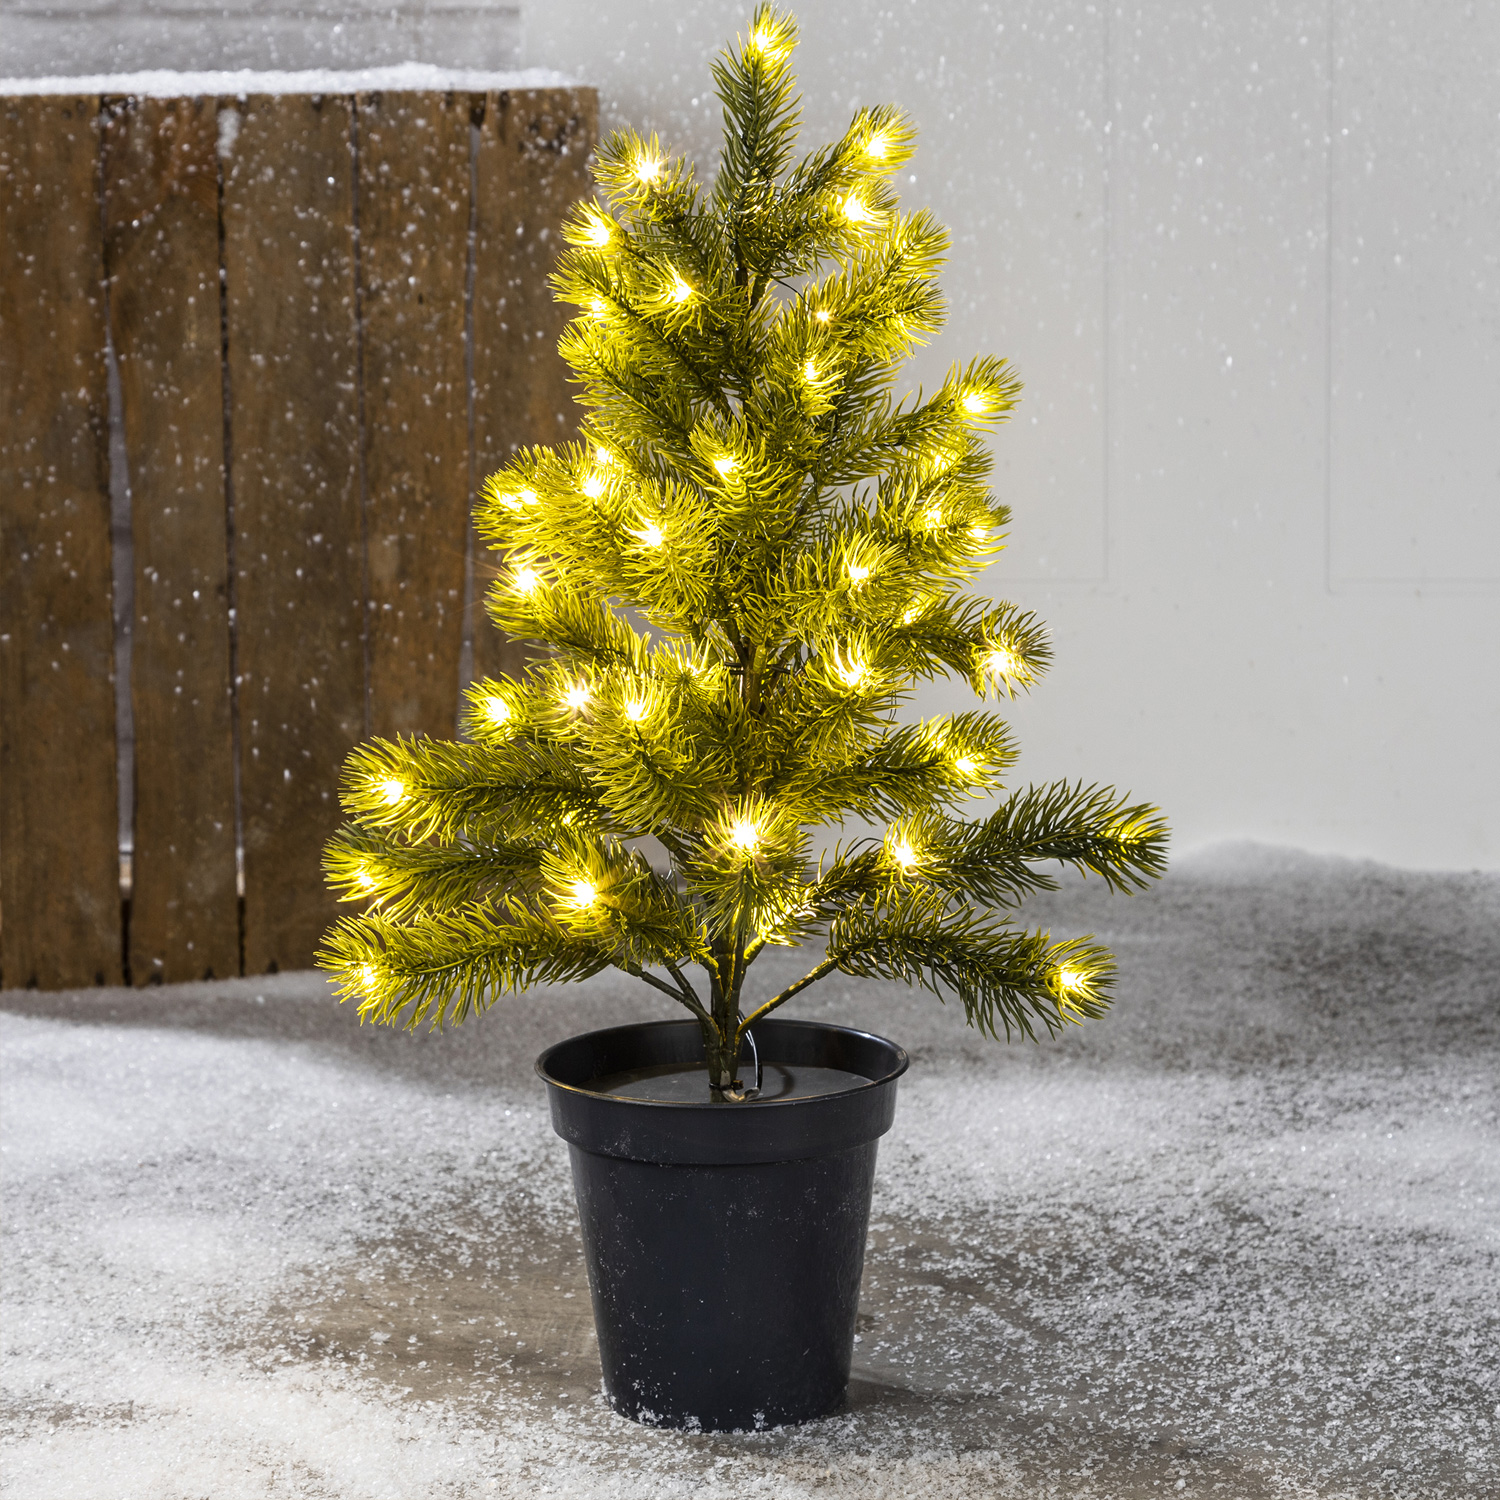 LED Weihnachtsbaum im Blumentopf - 50 warmweißen LED - H: 55cm